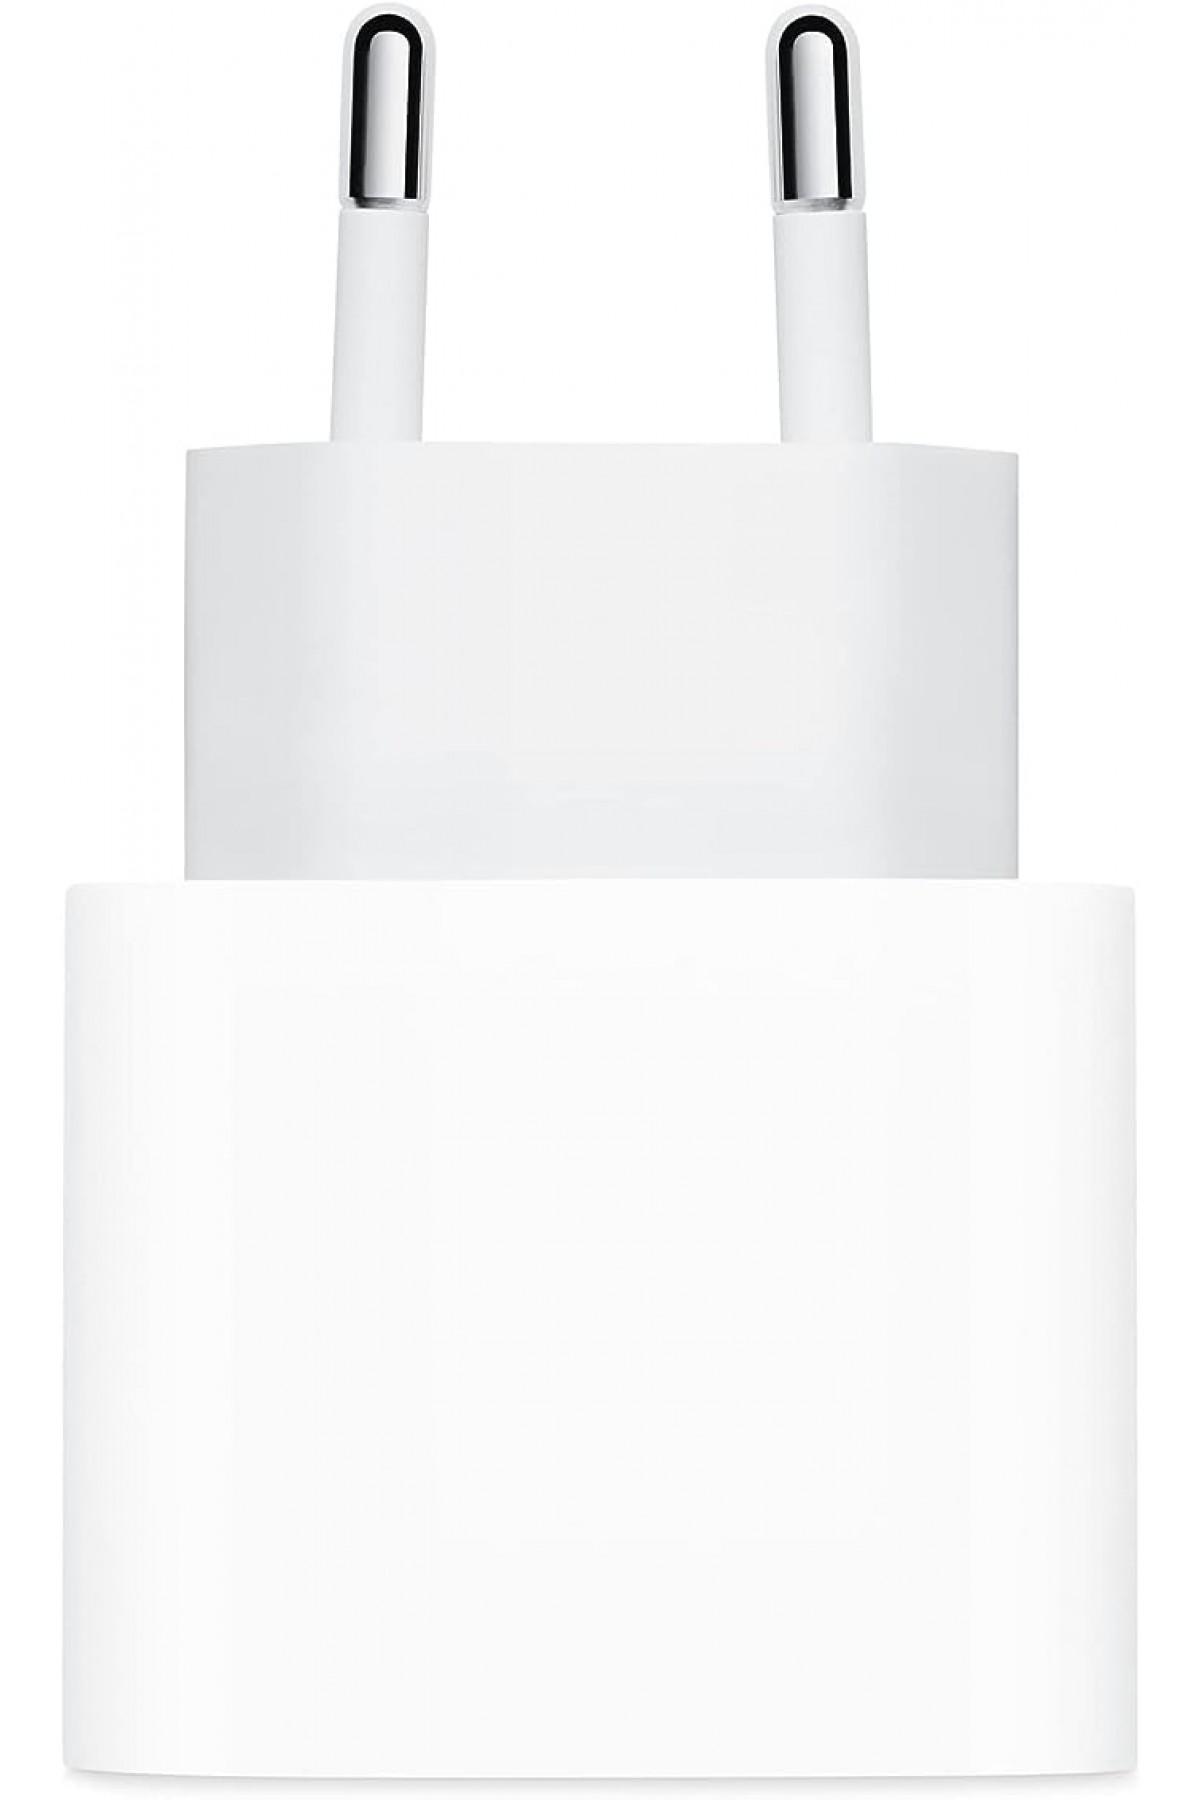 Apple 20W USB-C Güç Adaptörü MHJE3TU/A (Apple Türkiye Garantili)